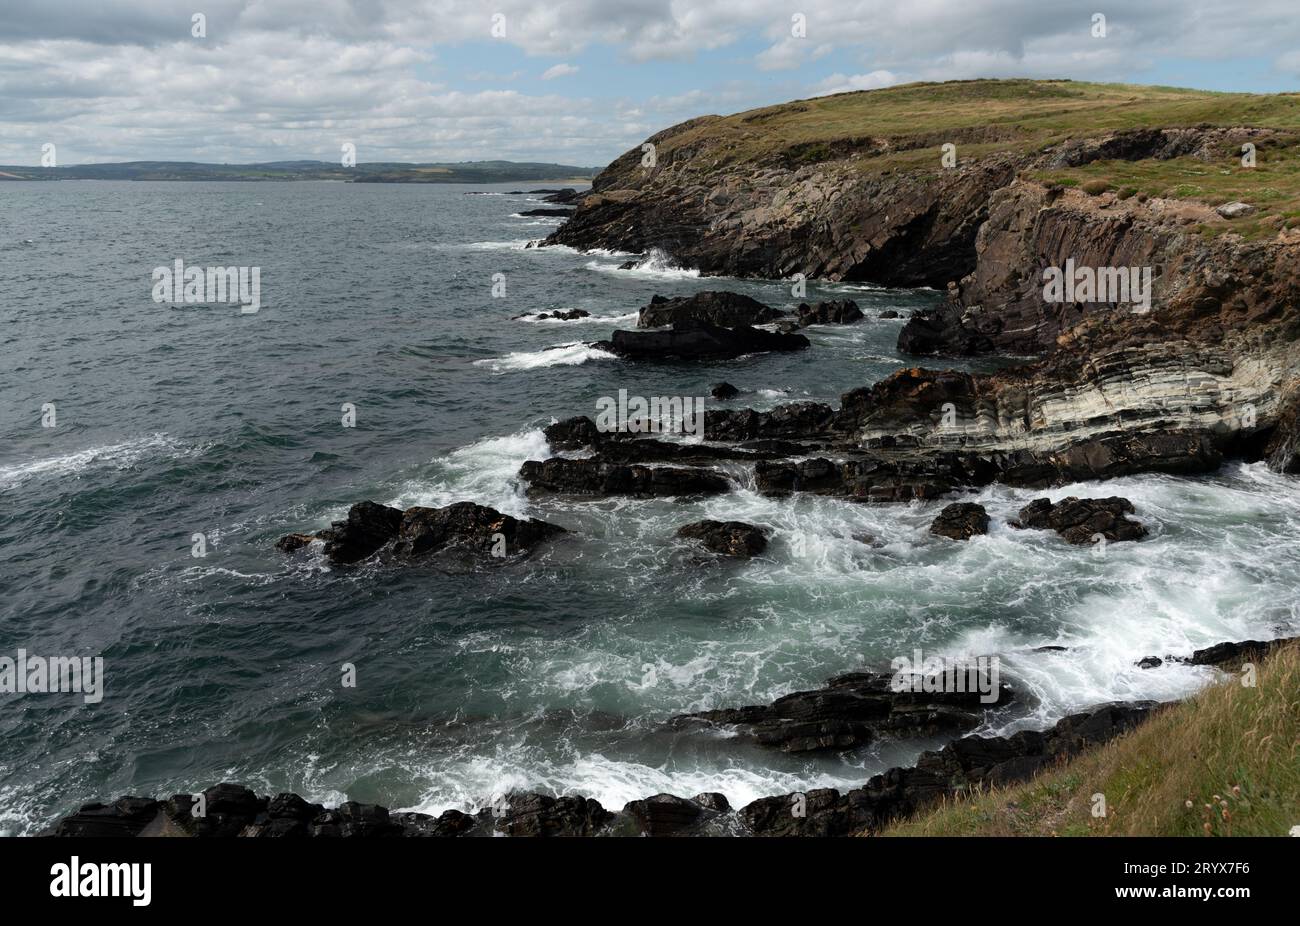 Felsige Küstenregion mit windigen, gefährlichen Wellen, die auf die Felsen stürzen. Stockfoto